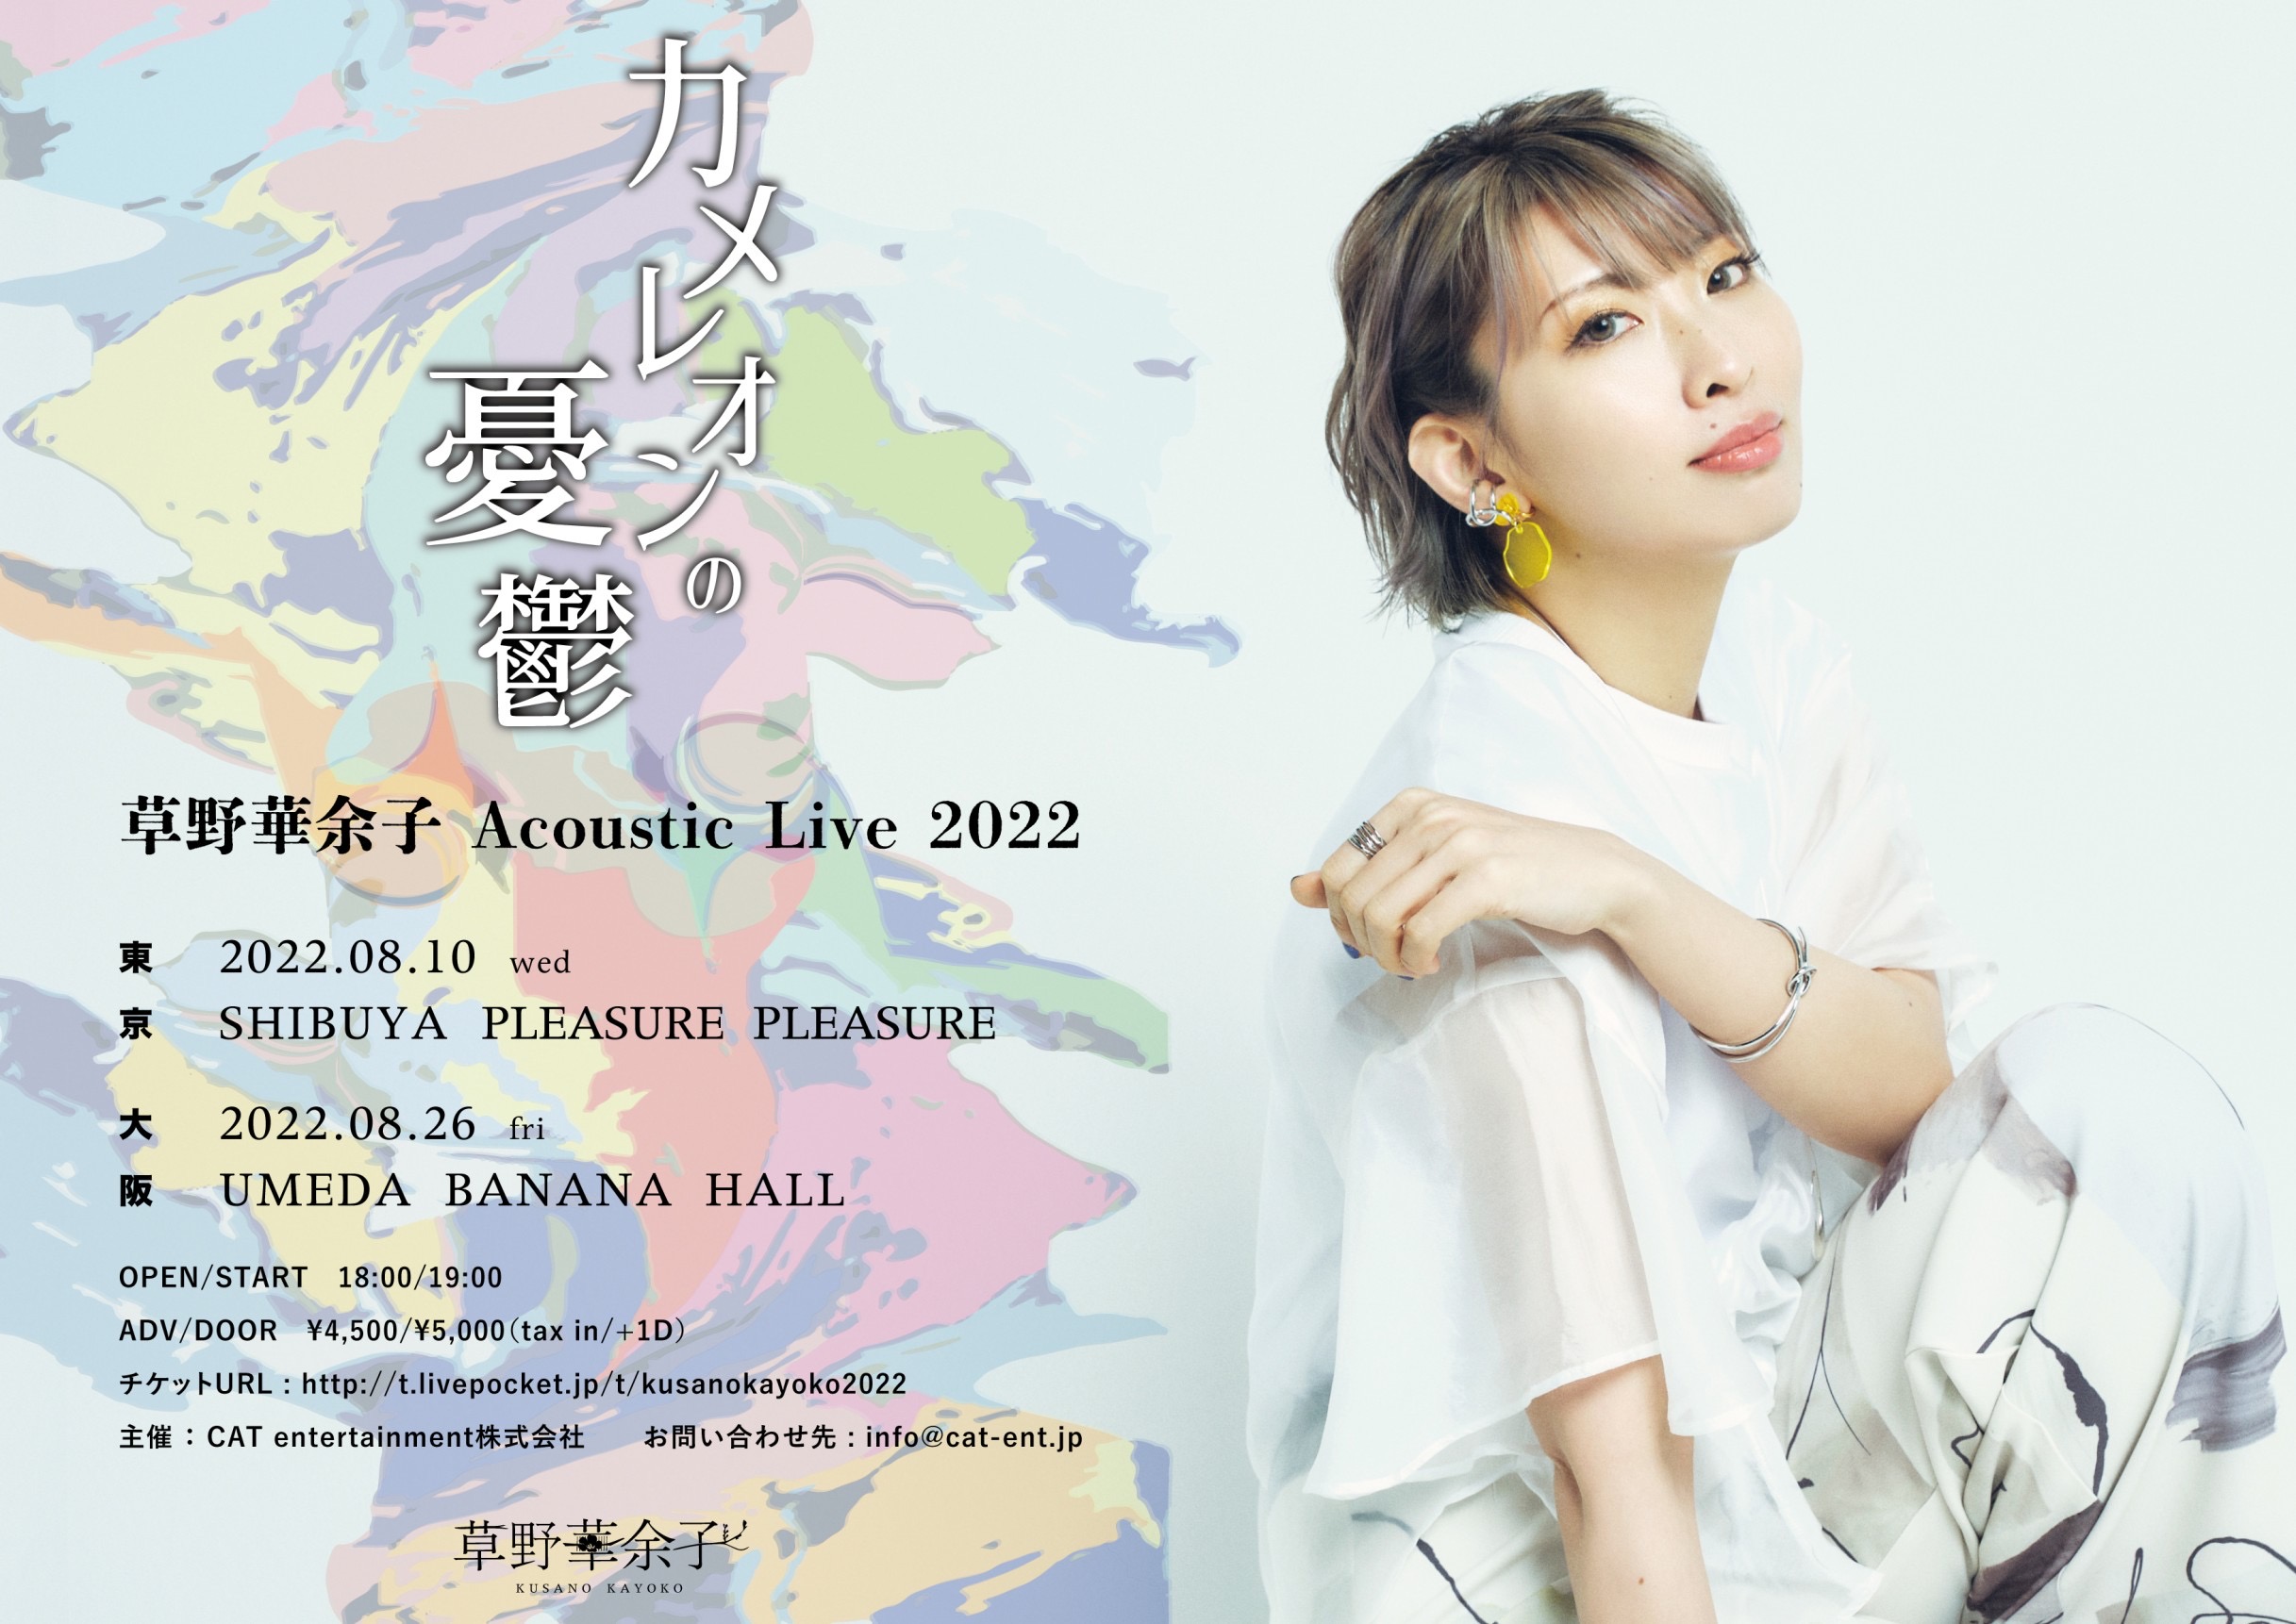 【大阪公演】草野華余子 Acoustic Live 2022「カメレオンの憂鬱」